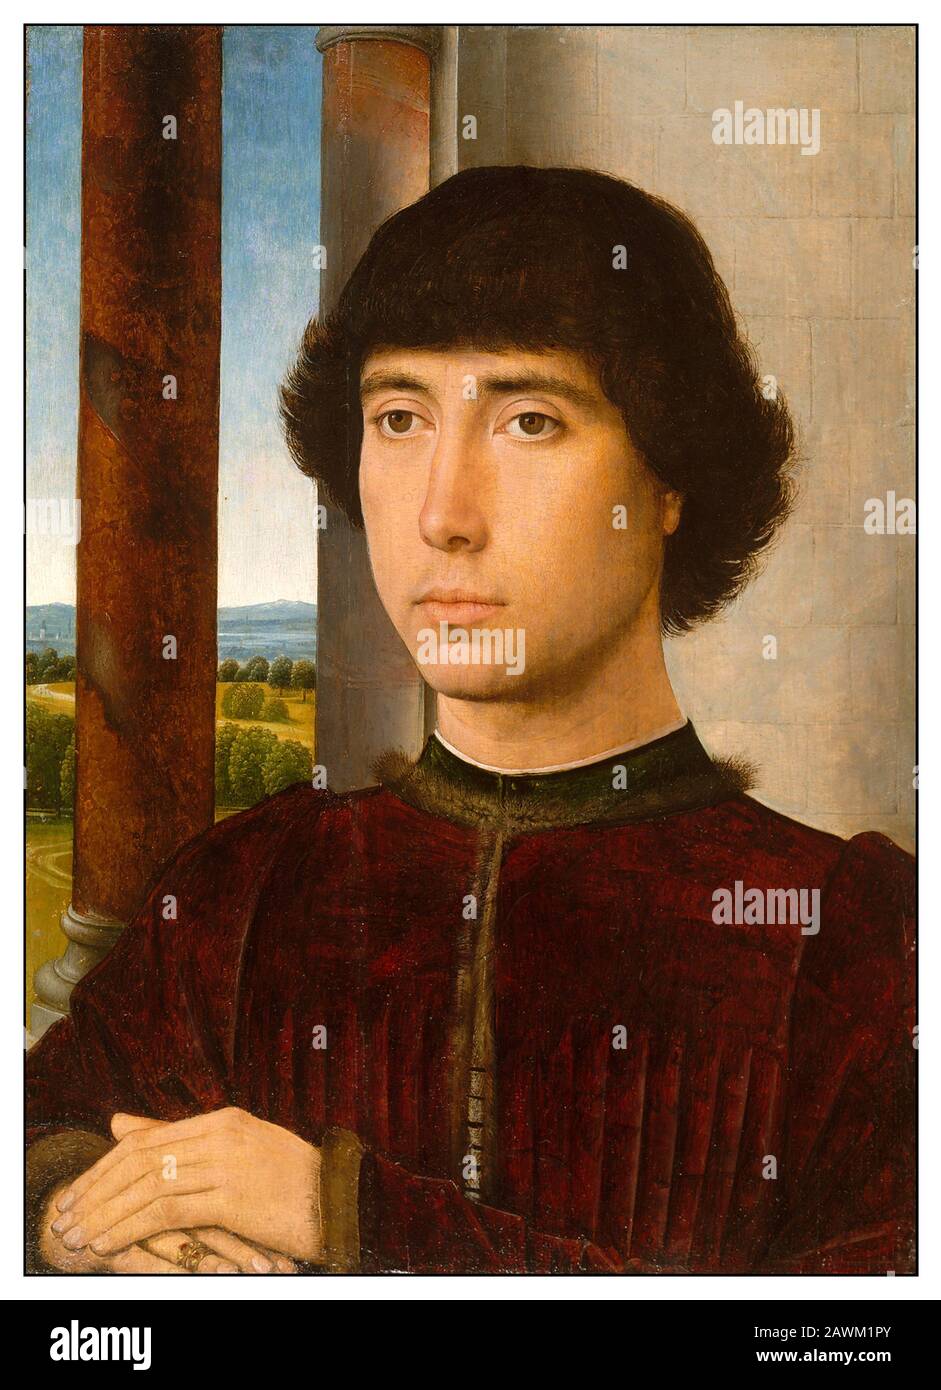 Porträt EINES Jungen Mannes von Hans Memling. Hans Memling (auch Memlinc geschrieben; c 1430 - 11. August 1494) war ein deutscher Maler, der nach Flanderns zog und in der Tradition der Frühen niederländischen Malerei arbeitete. Er wurde im Mittelrheingebiet geboren und verbrachte vermutlich seine Kindheit in Mainz. Er war bis 1465 in die Niederlande gezogen und verbrachte Zeit in der Brüsseler Werkstatt von Rogier van der Weyden. Er wurde in der Folge Bürger von Brüggen, wo er zu einem der führenden Künstler wurde, in denen er religiöse Werke malte, die oft Porträts seiner reichen Mäzene einflossen. Stockfoto